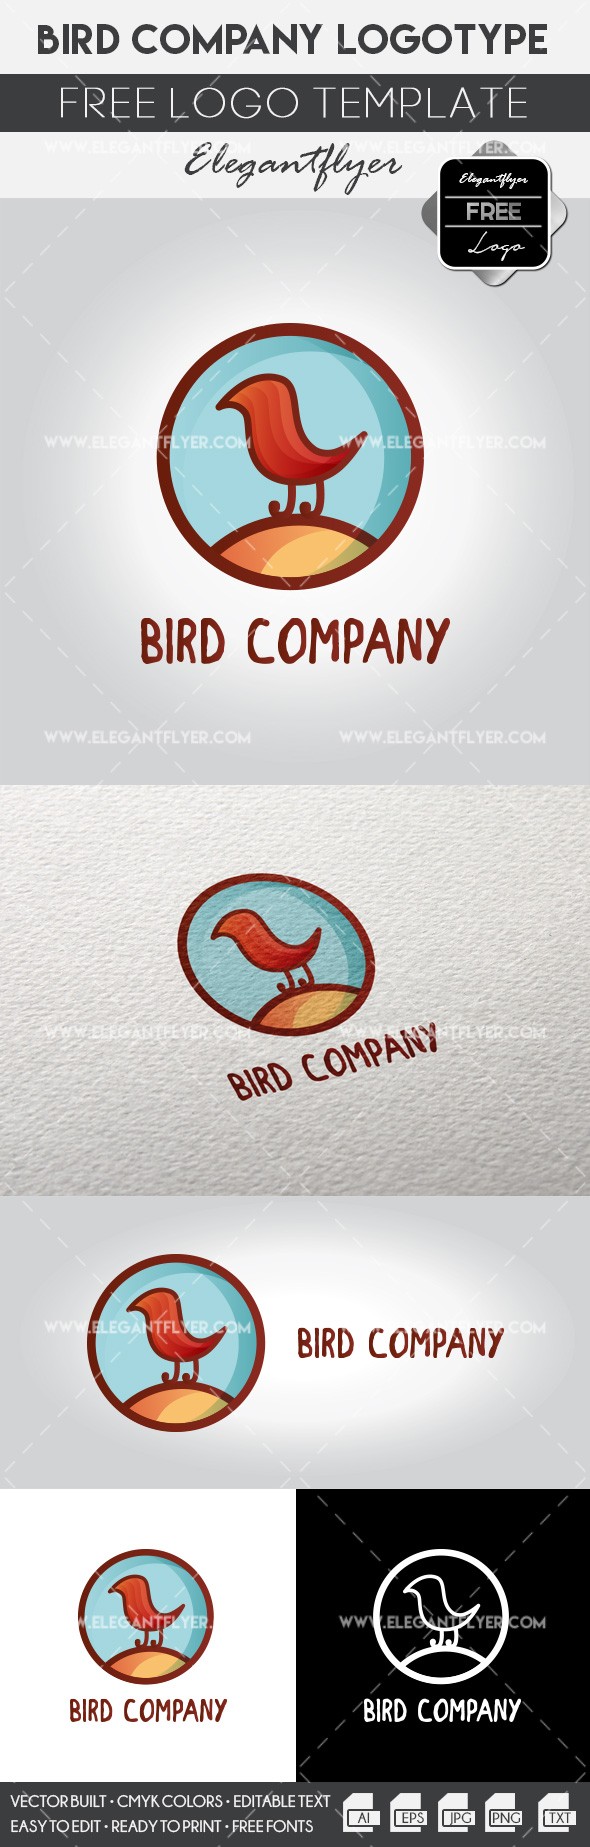 Empresa de pássaros by ElegantFlyer